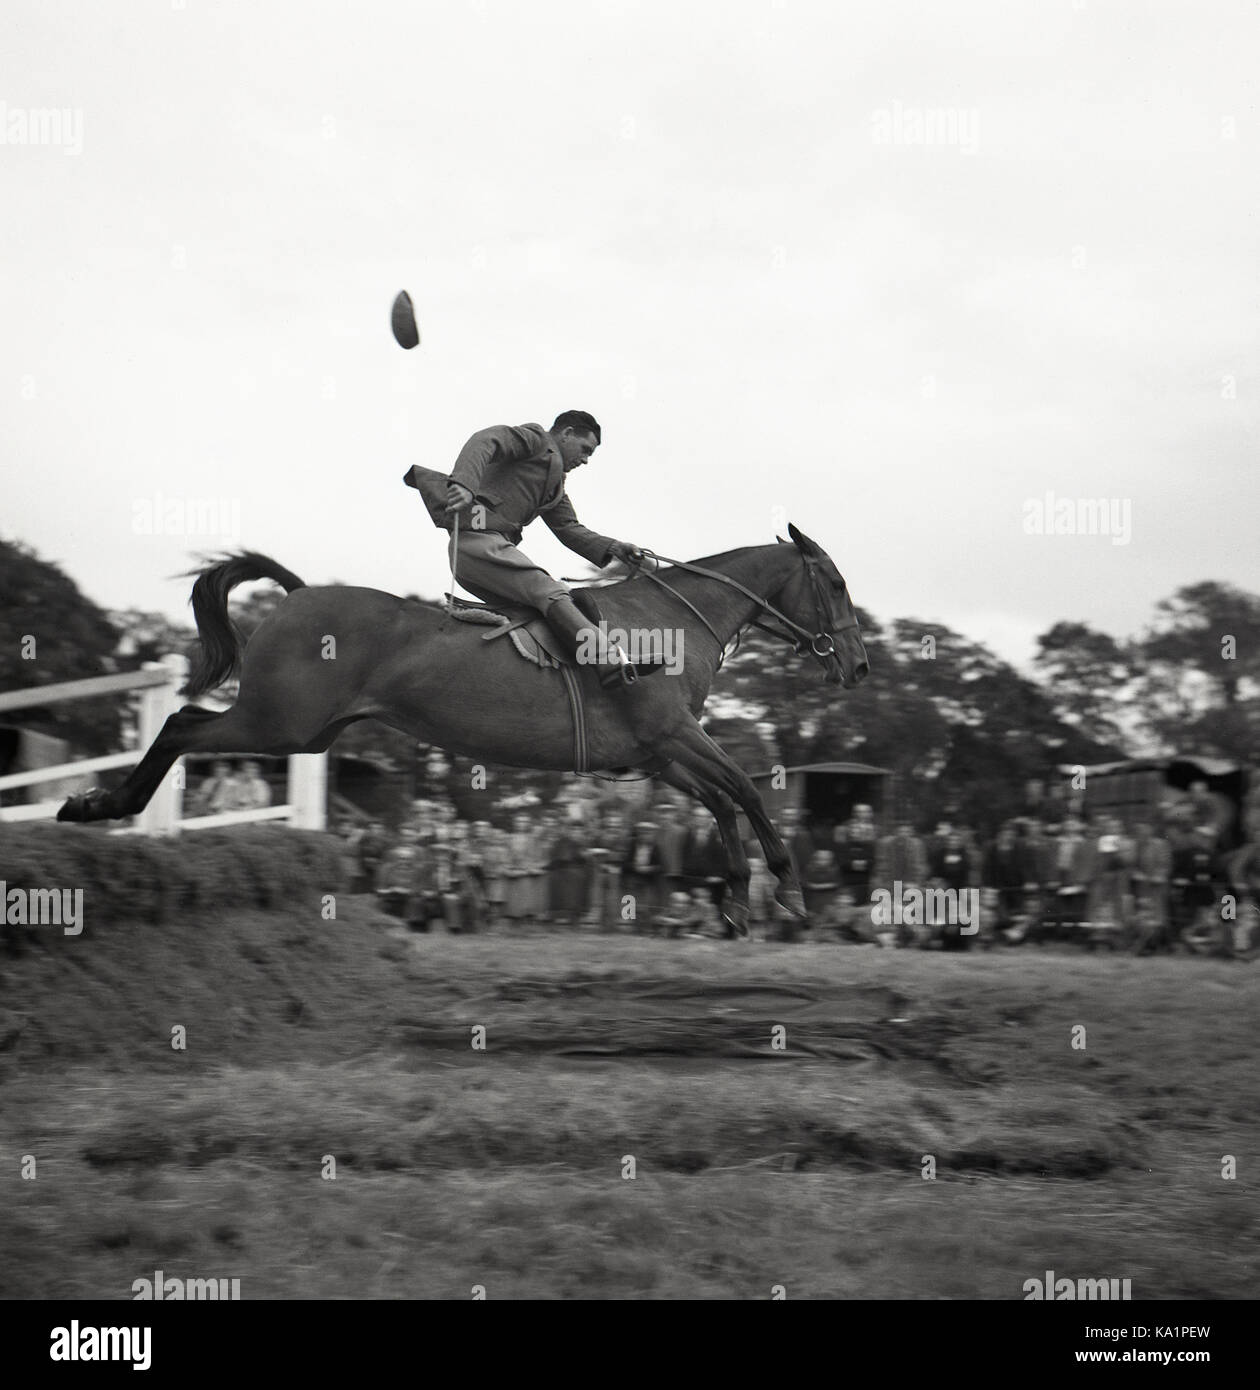 Années 1950, compétition historique en plein air, un cavalier sur son cheval sautant au-dessus d'un danger d'eau, tenant les rênes du cheval d'une main tandis que sa casquette en tissu vole, Irlande du Nord. Banque D'Images